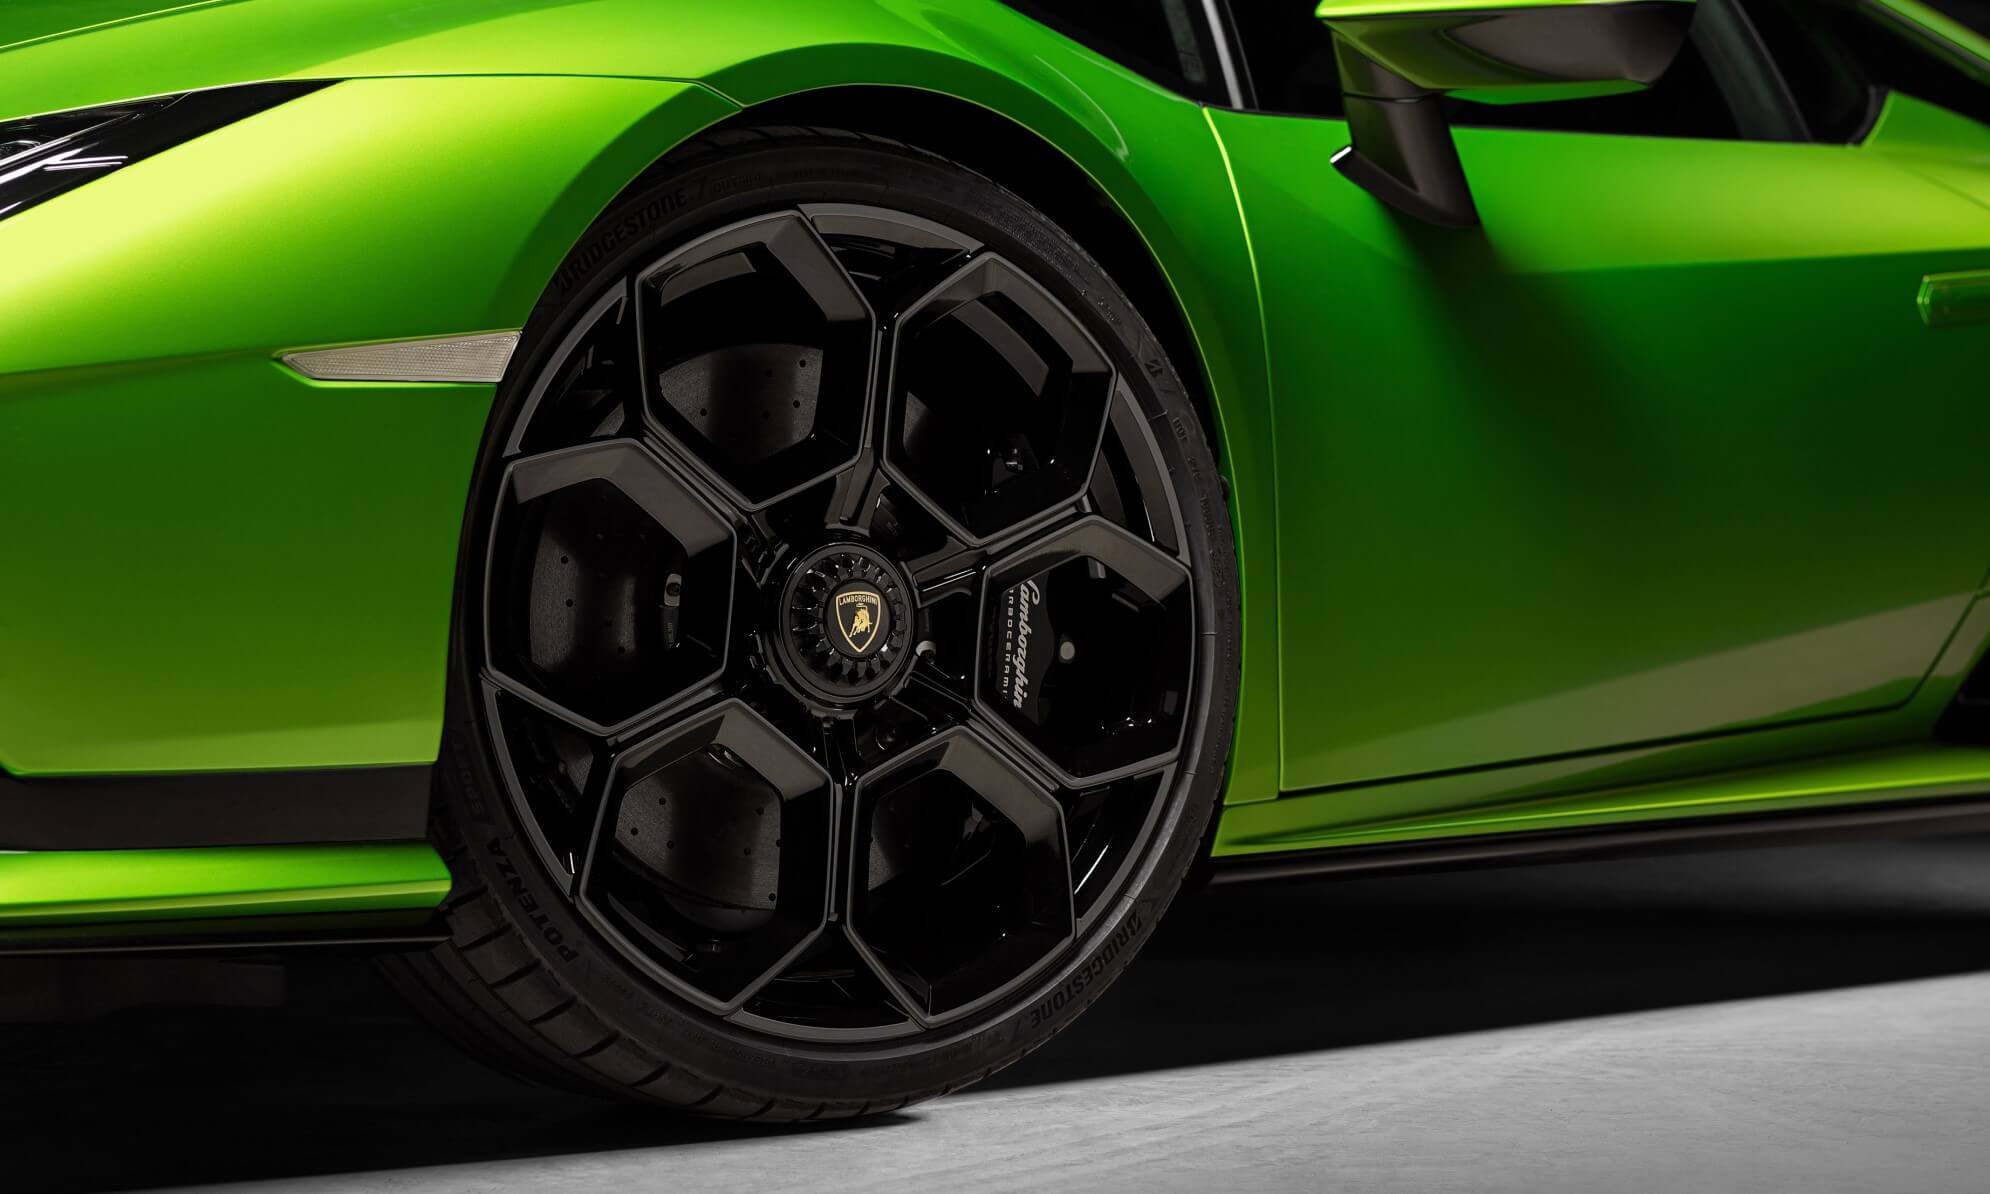 Lamborghini Huracan Tecnica wheel